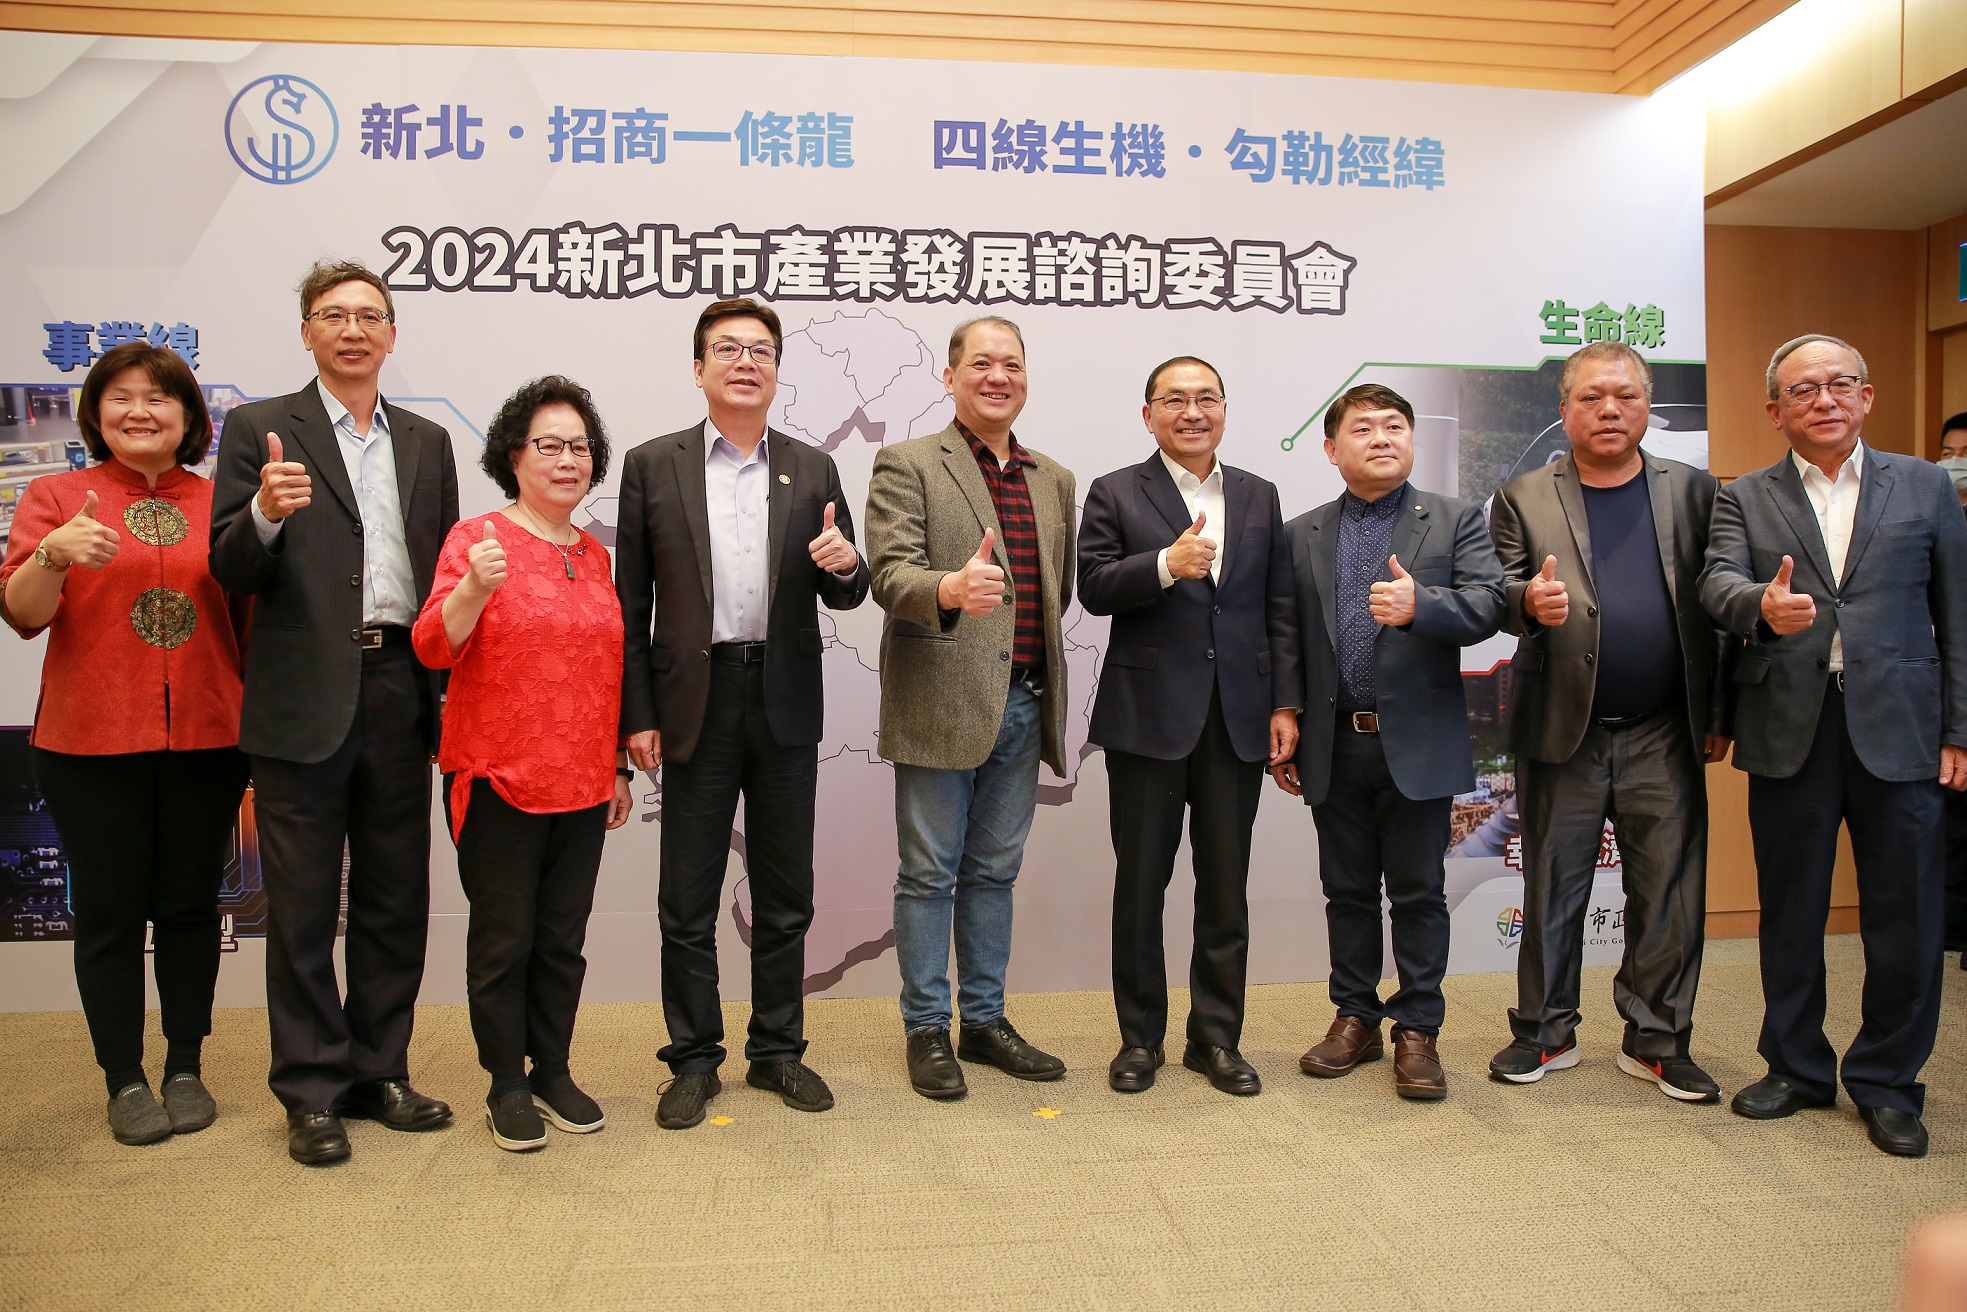 新北市長侯友宜(右4)及副市長劉和然(左4)與工商領袖代表合影。